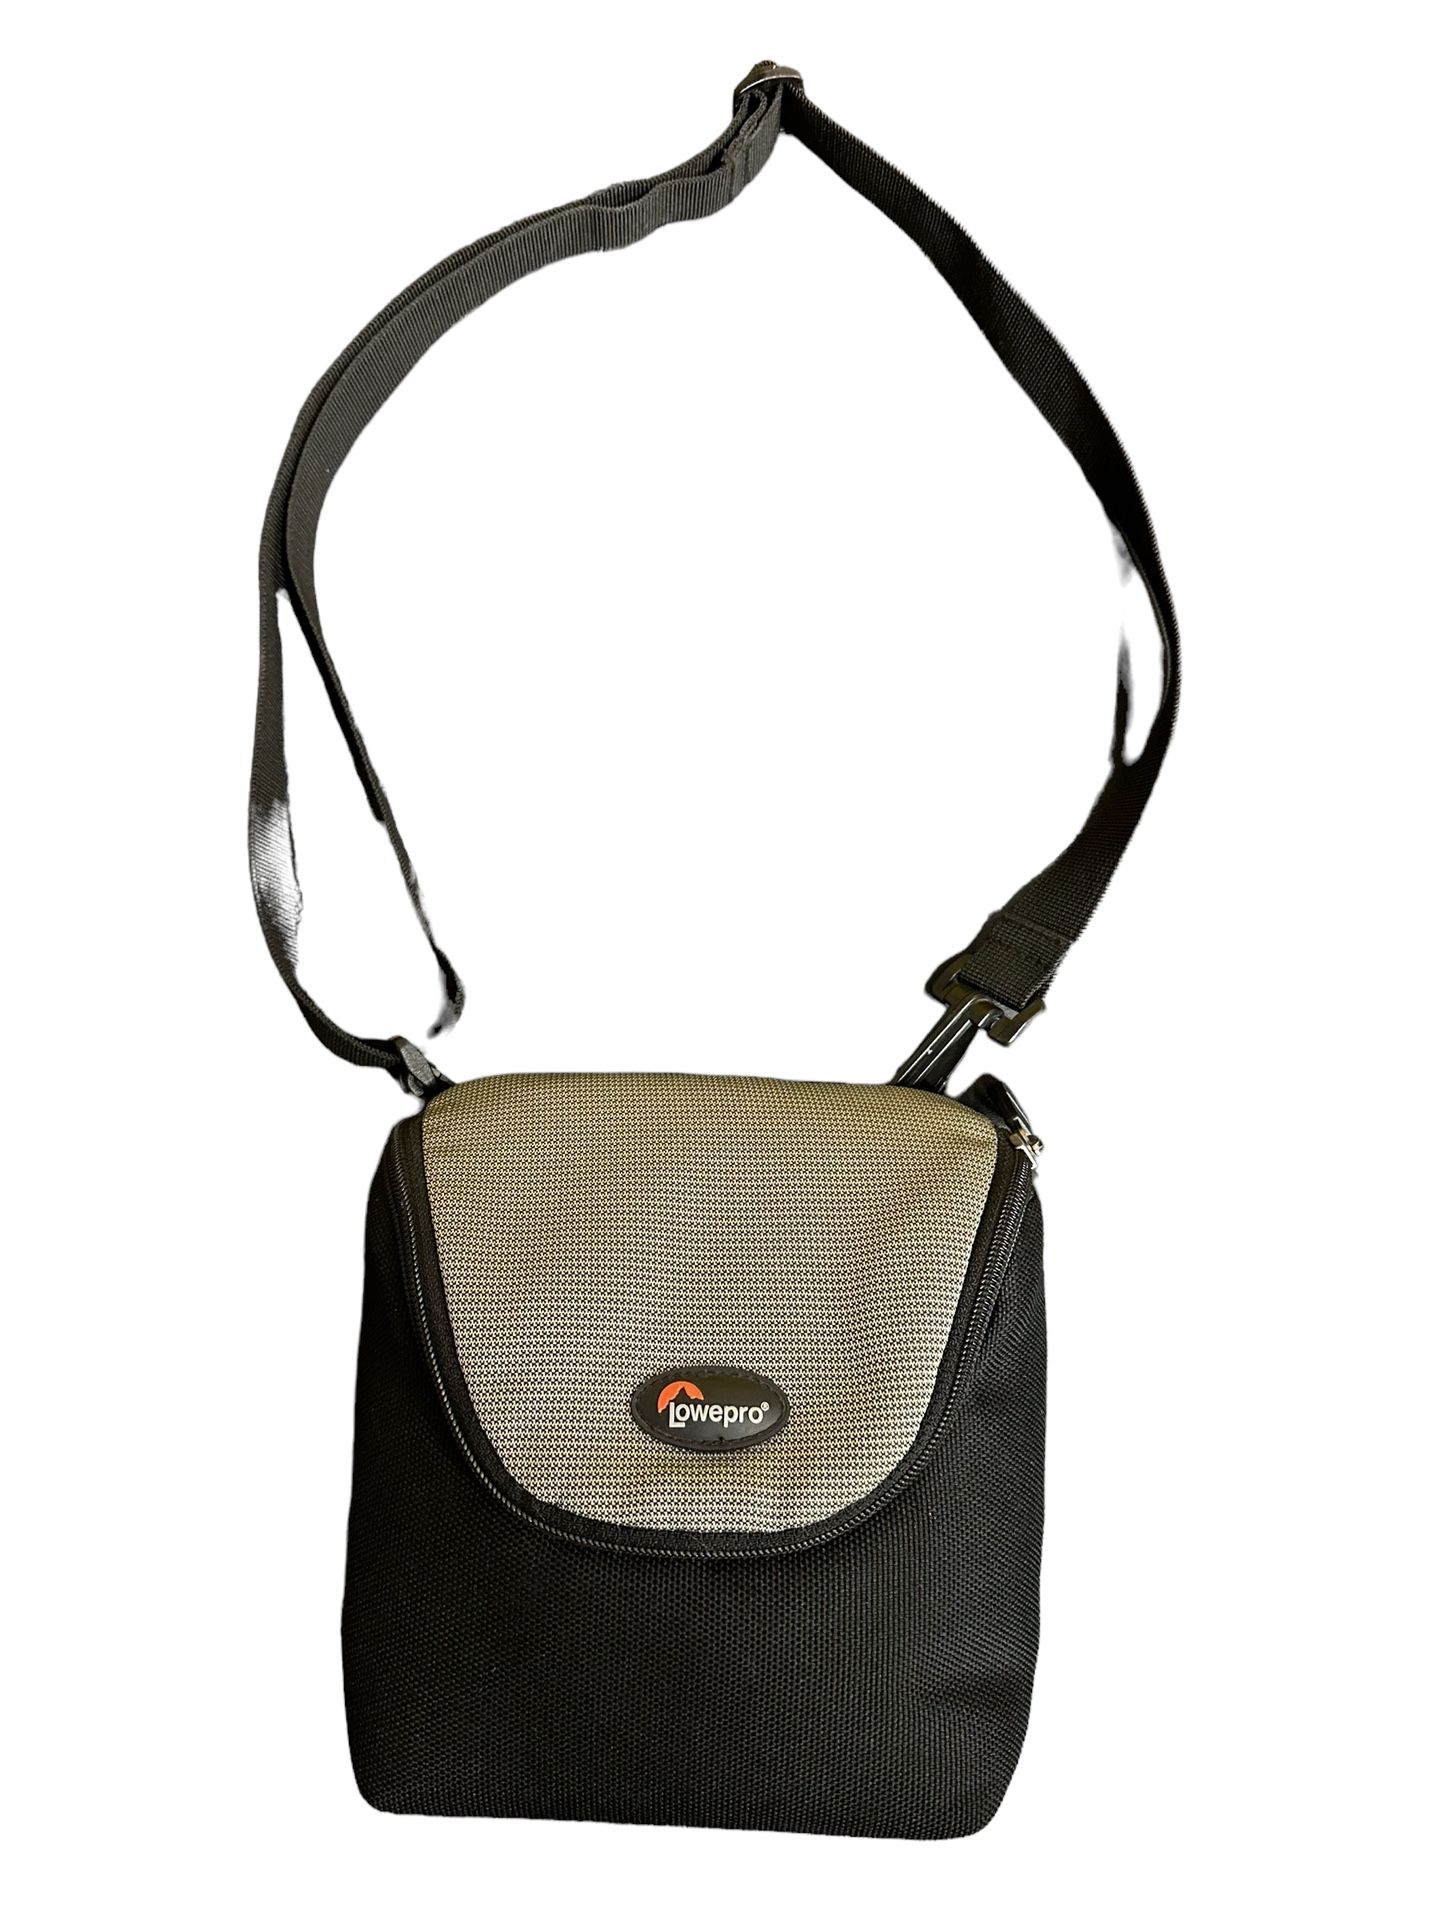 LowePro Camera Bag Padded Bag With Shoulder Strap - Camera & Lens Bag